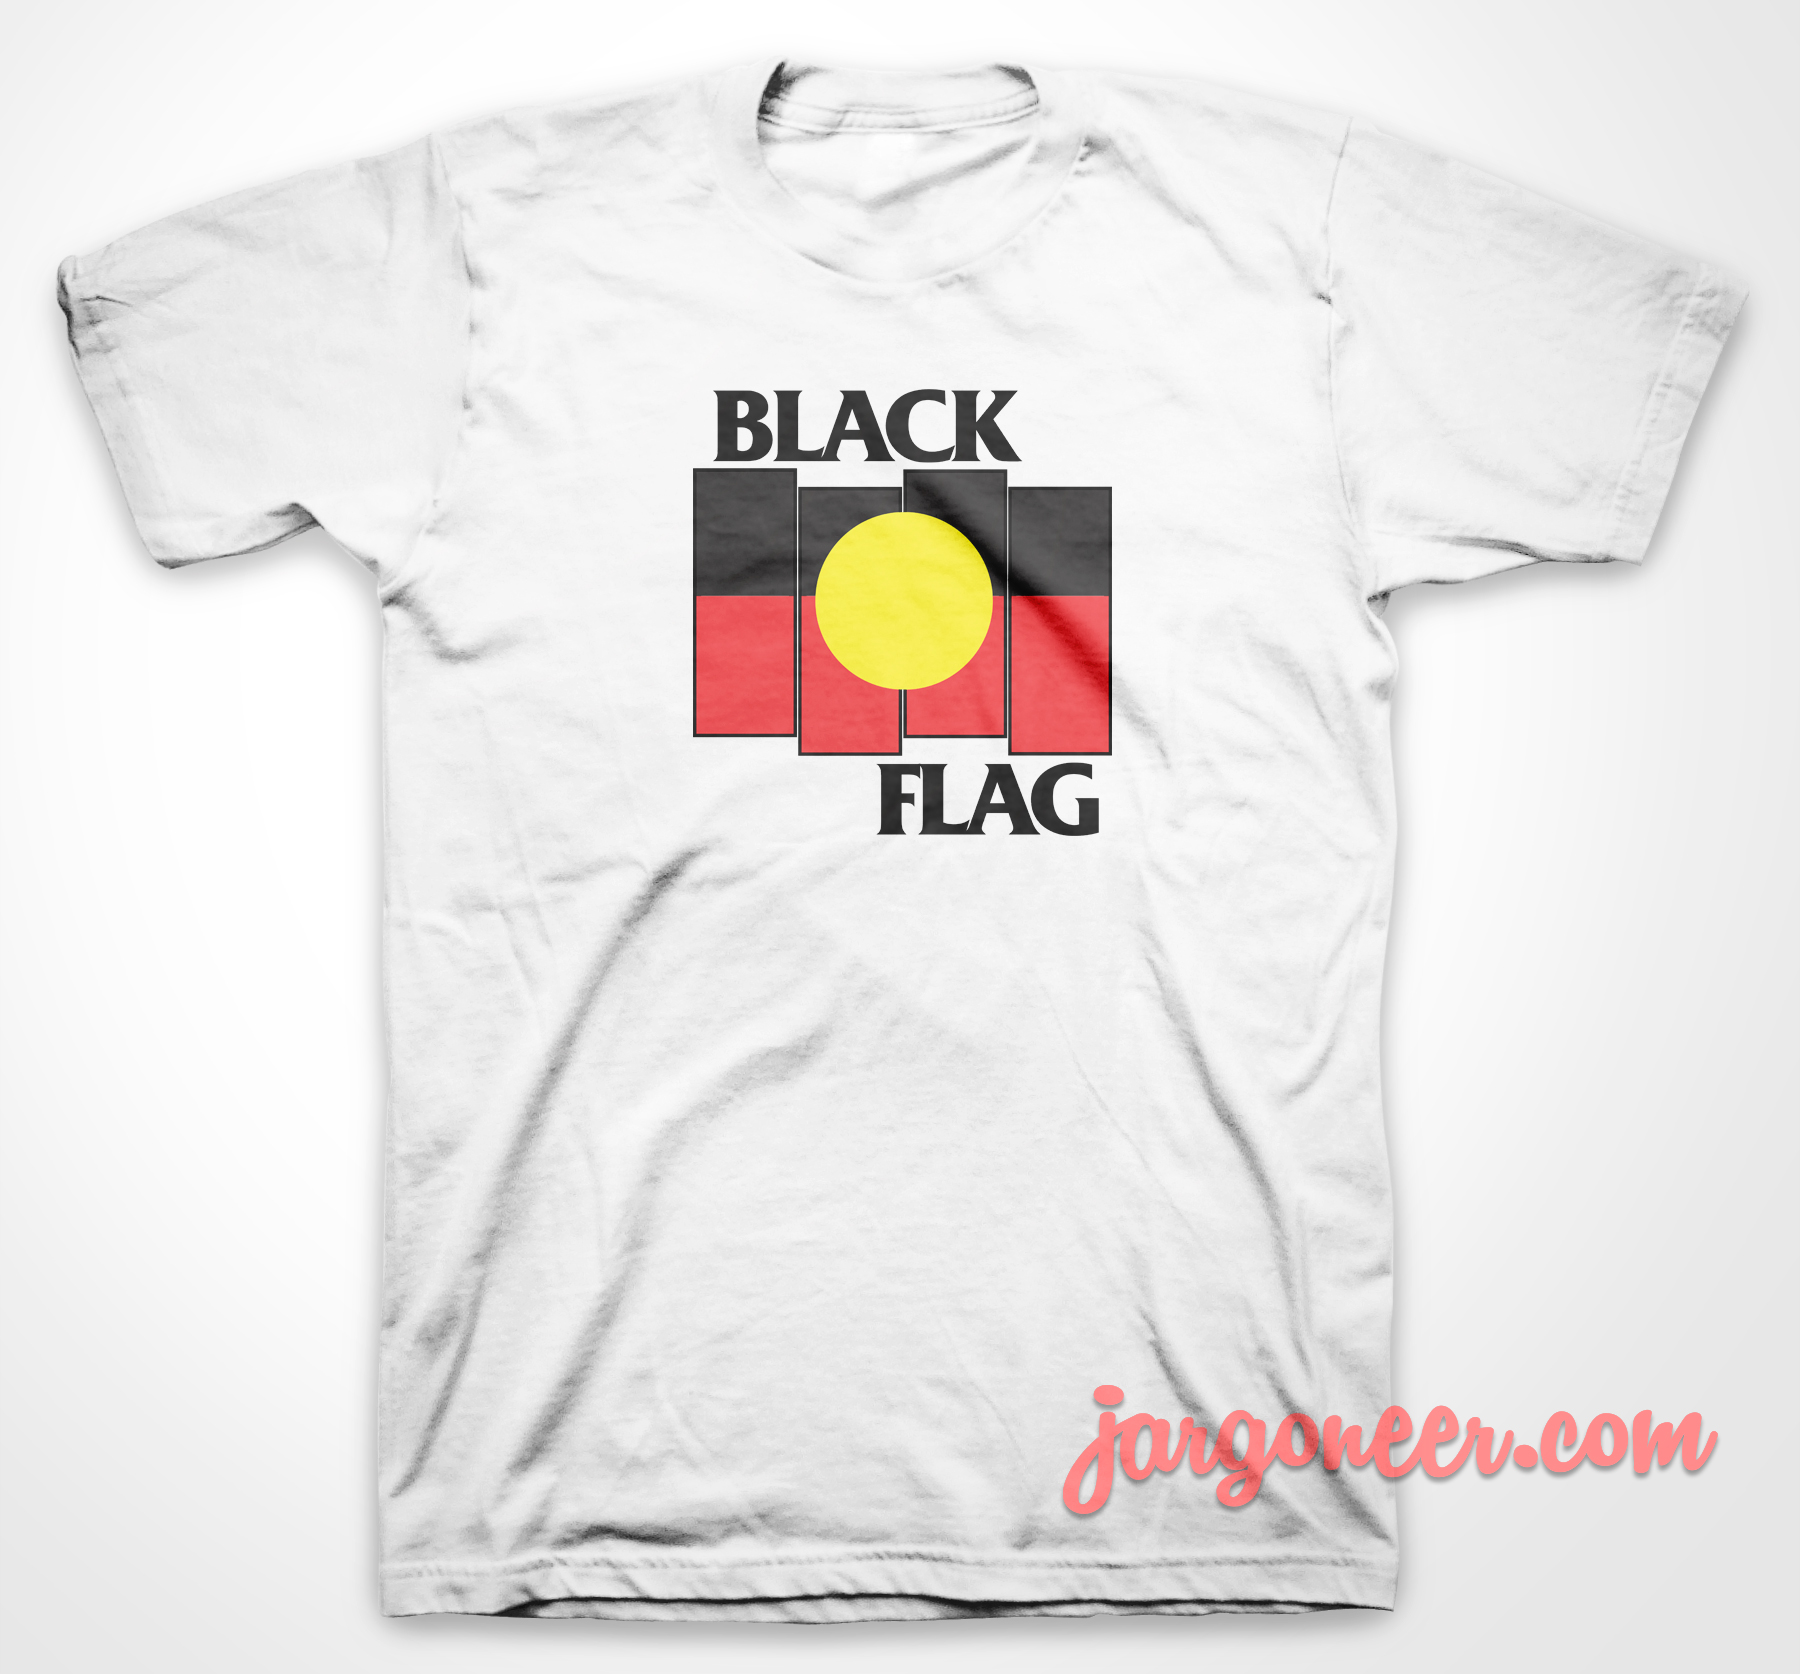 Black Flag X Aboriginal - Shop Unique Graphic Cool Shirt Designs